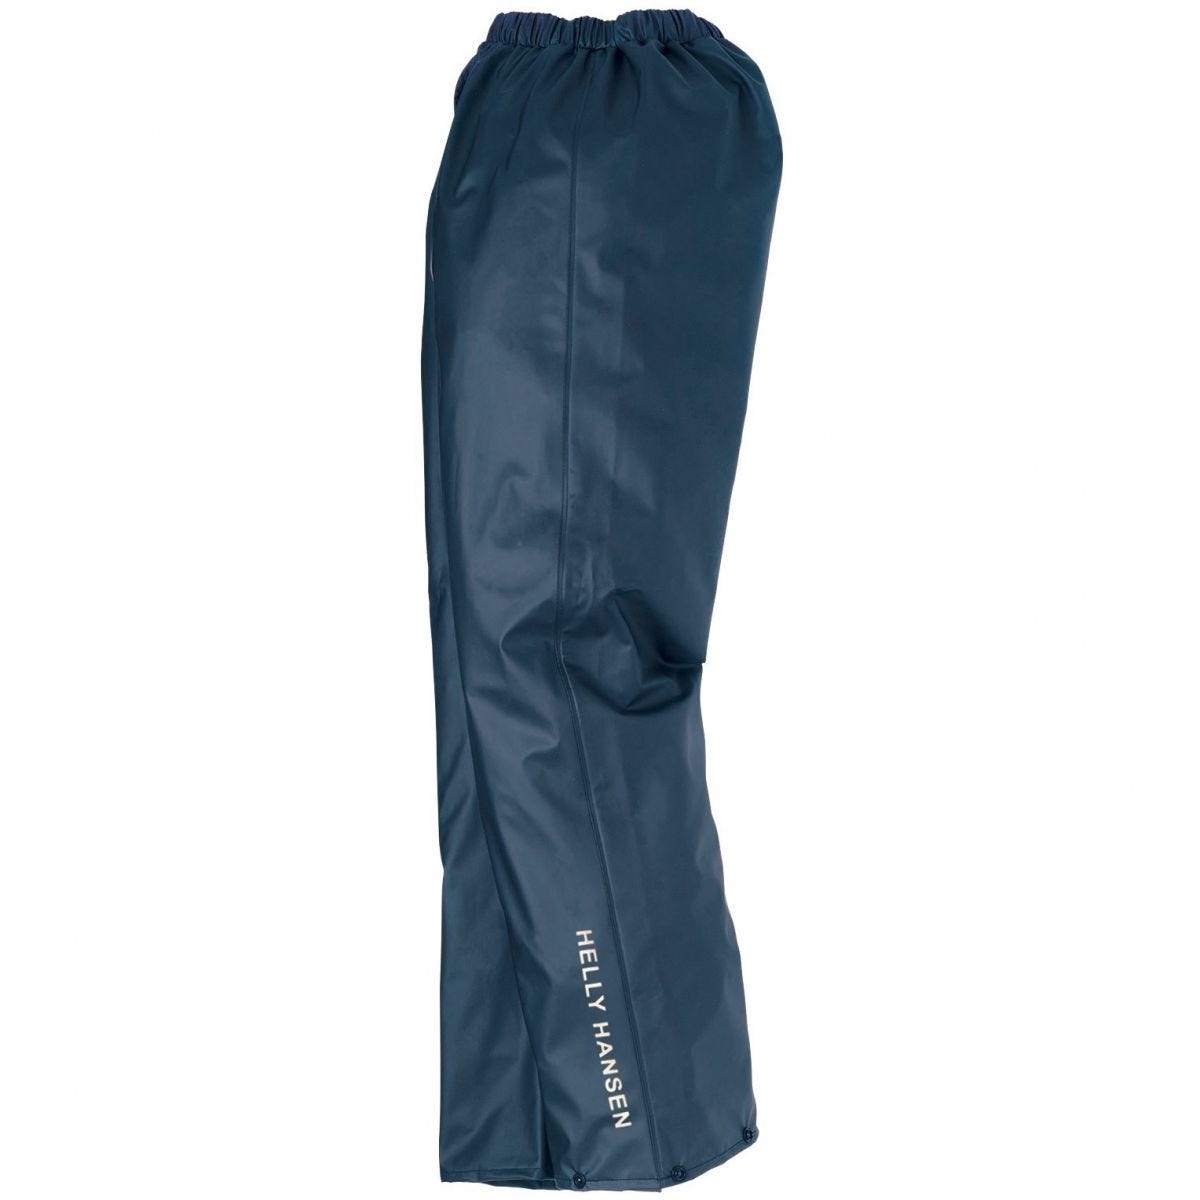 Pantalon de pluie imperméable Voss bleu marine - Helly Hansen - Taille 2XL 0